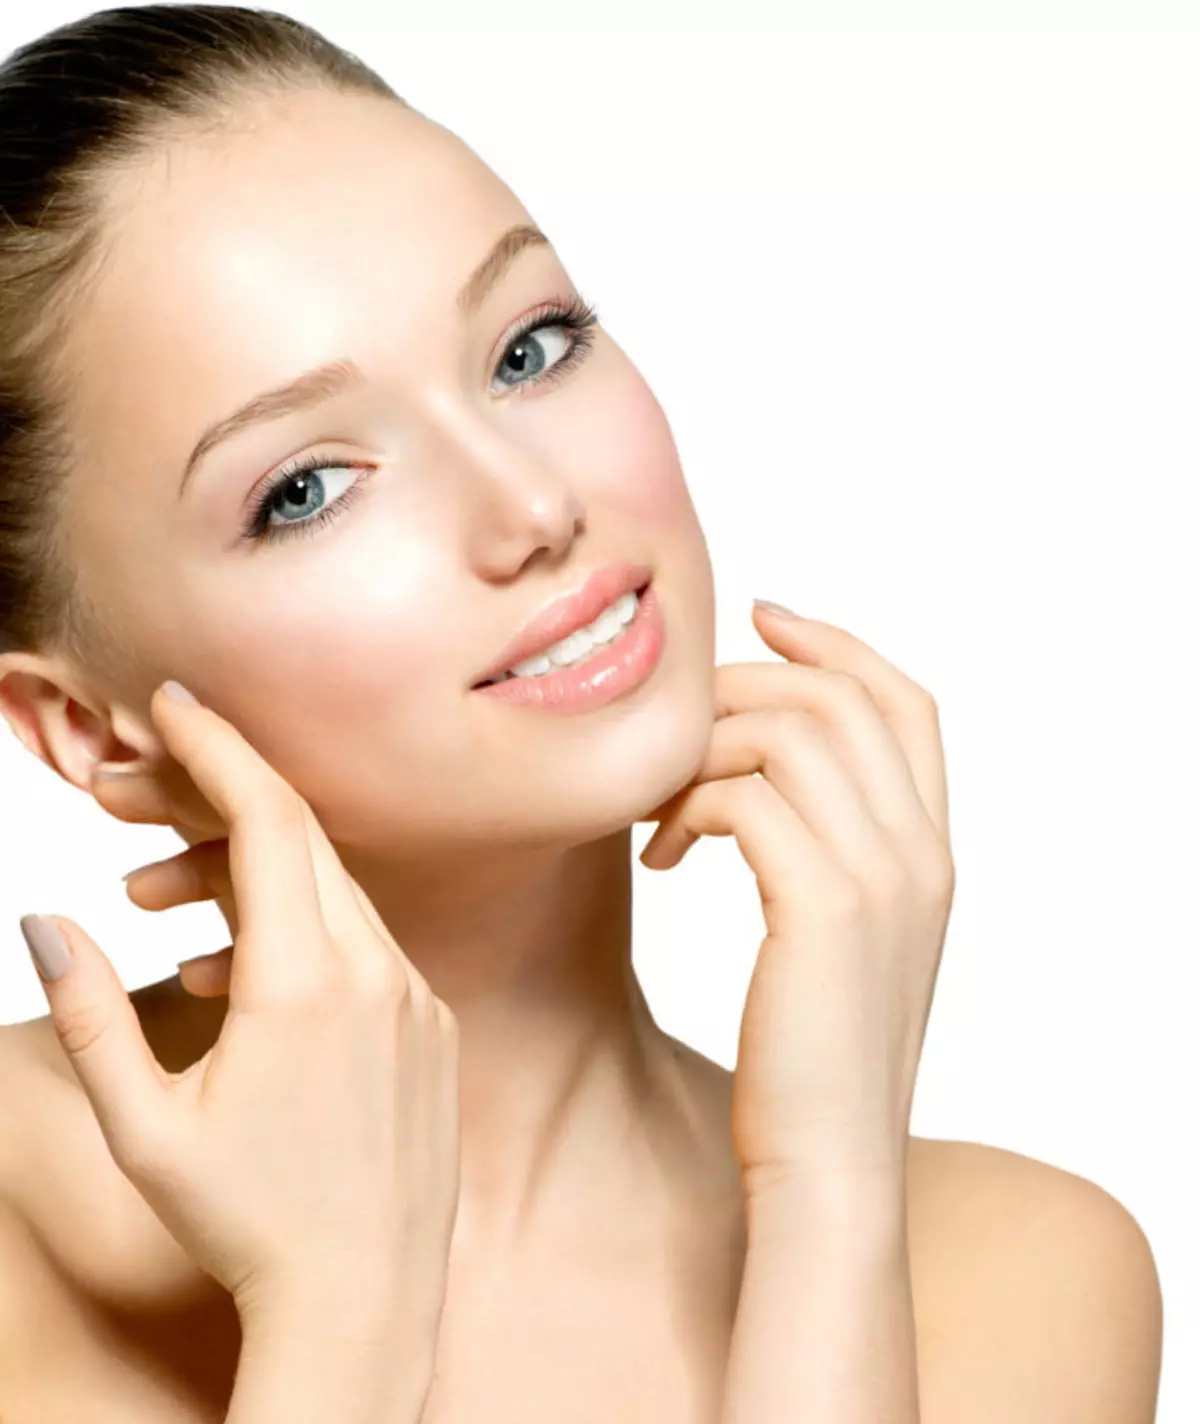 Kozmetika pre mastný a problém s pokožkou: Recenzia lekárenskej kozmetiky pre tvár s pokročilými pórami, najlepšie profesionálne a odchod kozmetiky 4363_22